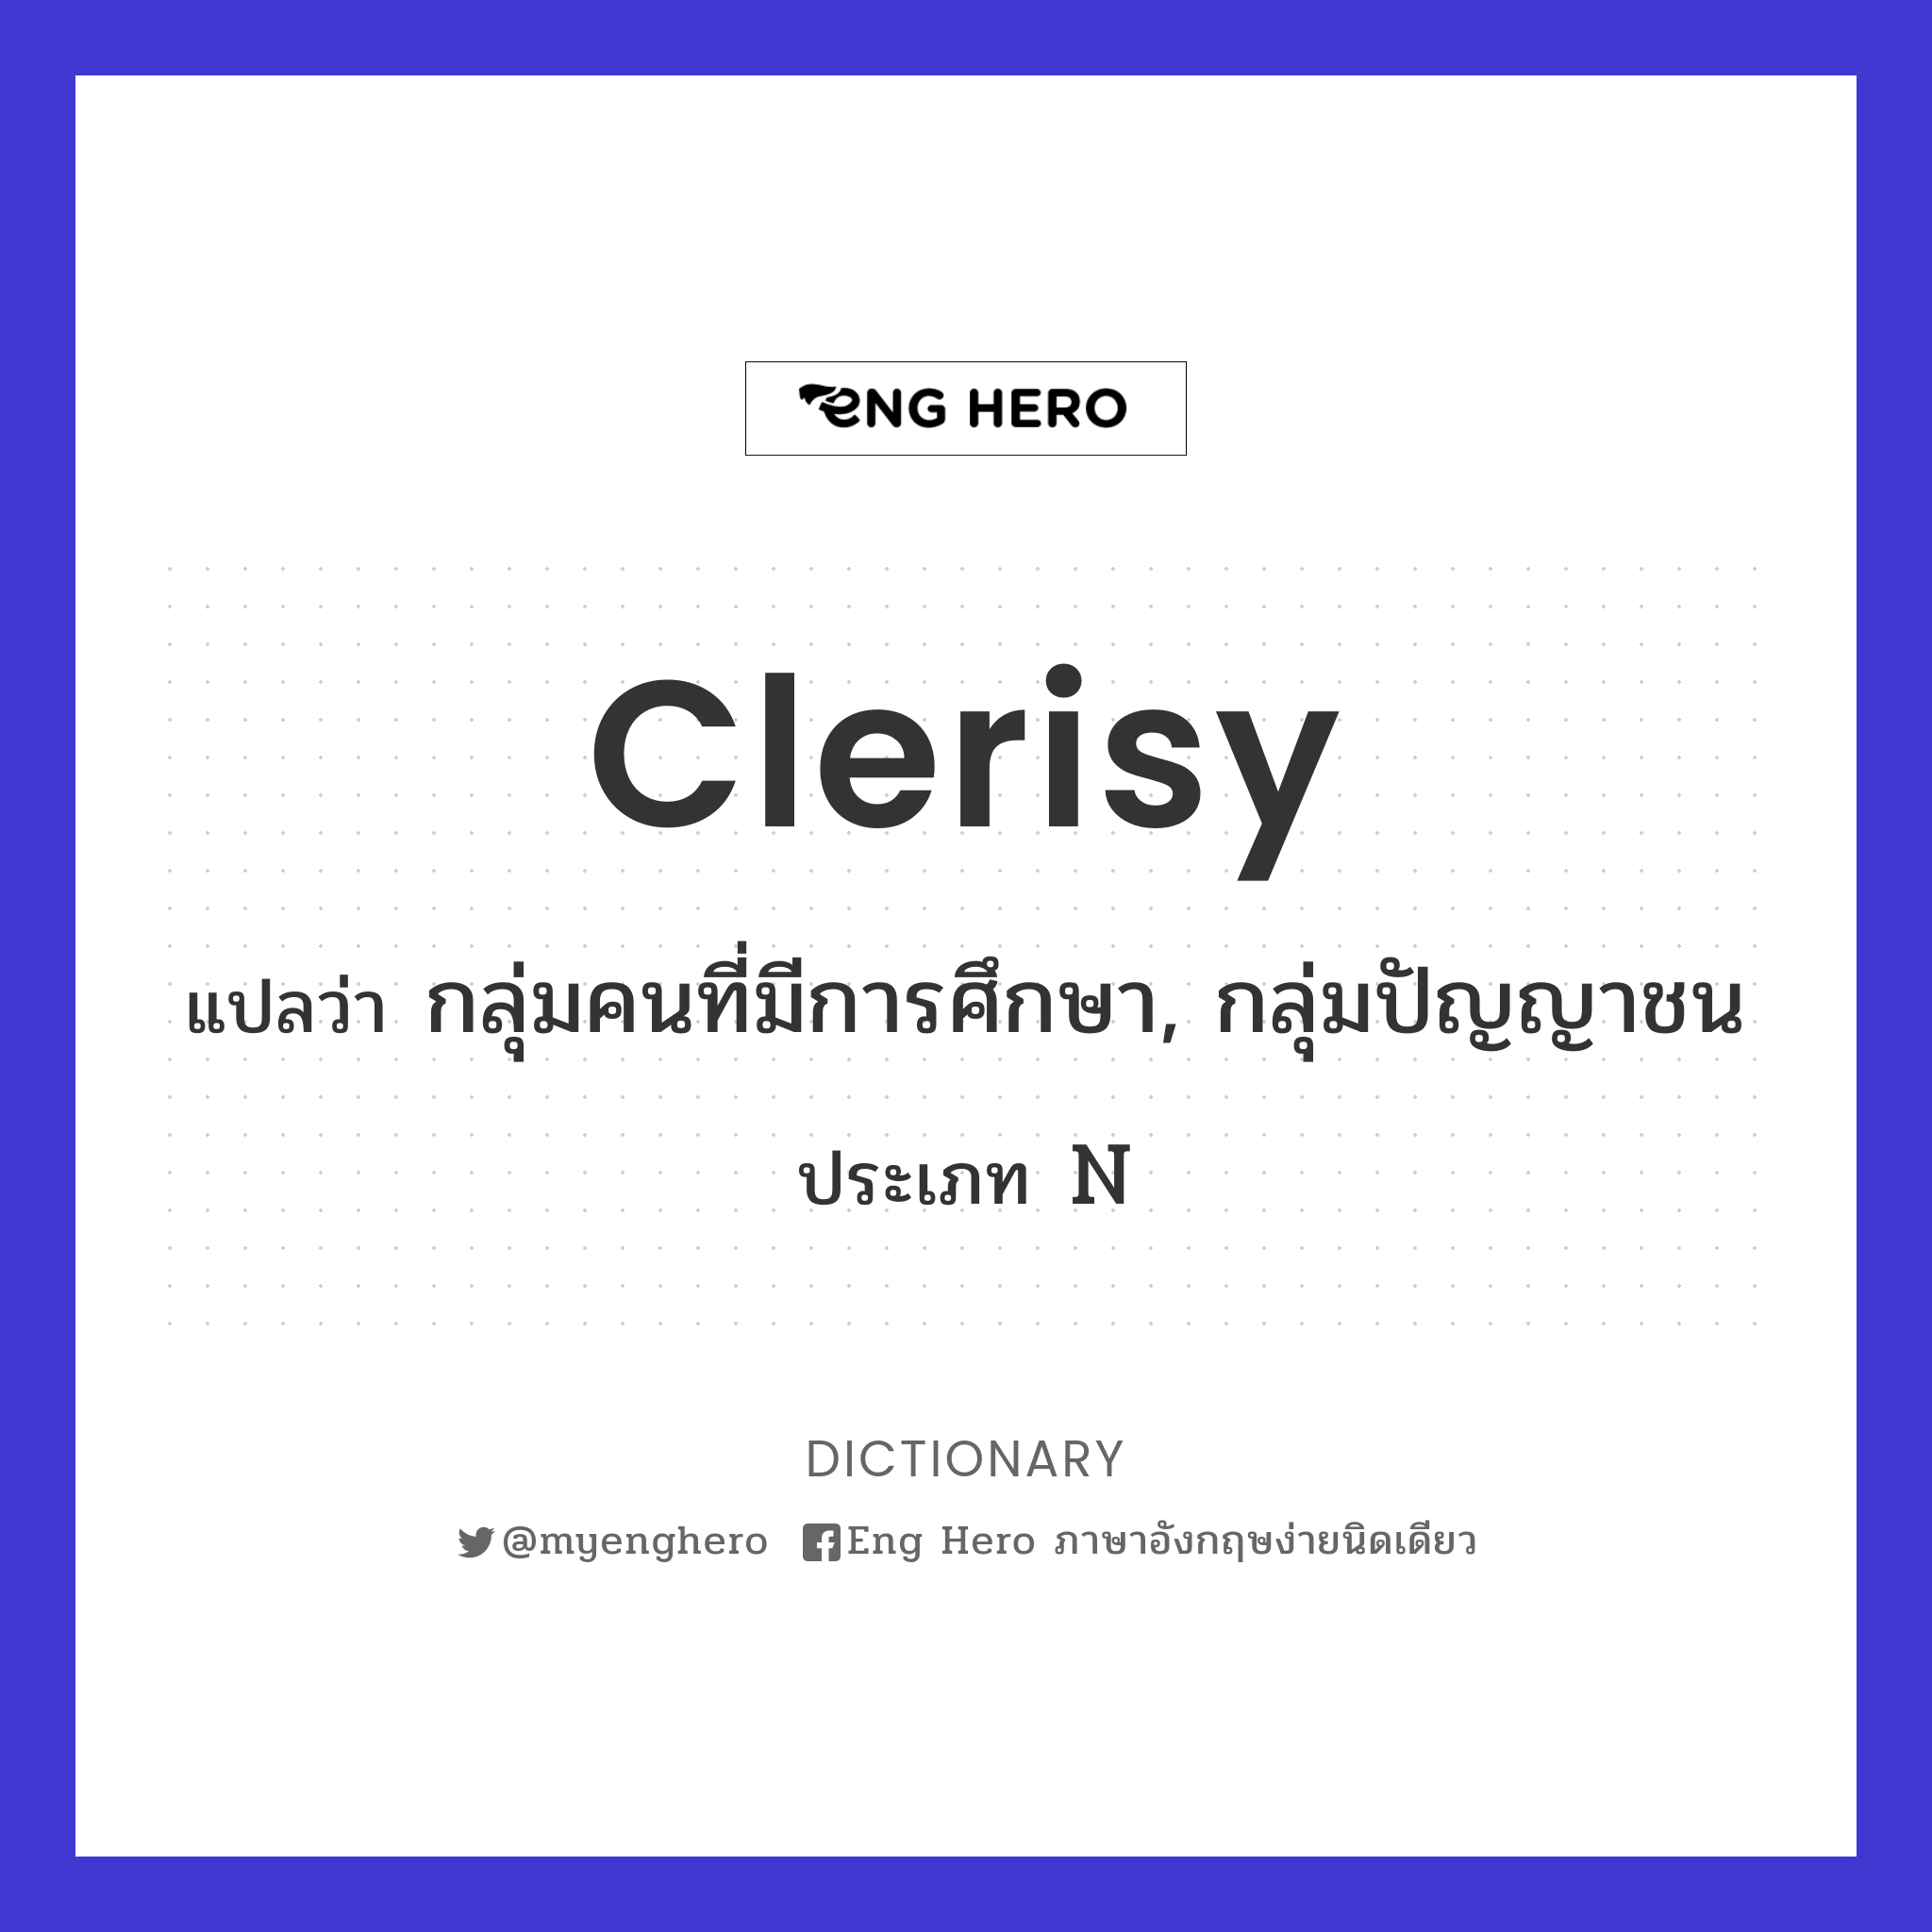 clerisy